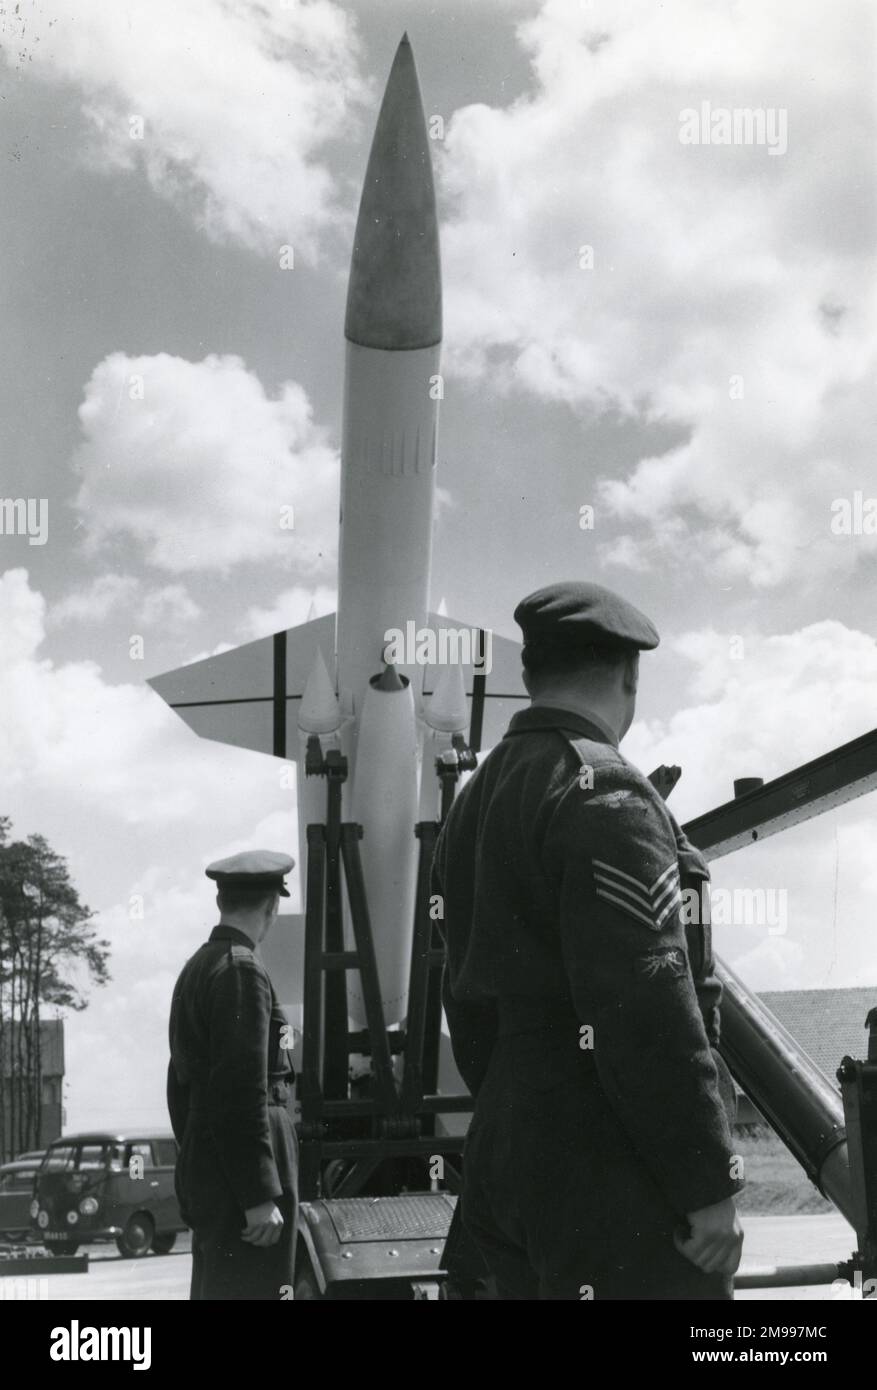 Bristol Bloodhound-Boden-Luft-Rakete. Stockfoto